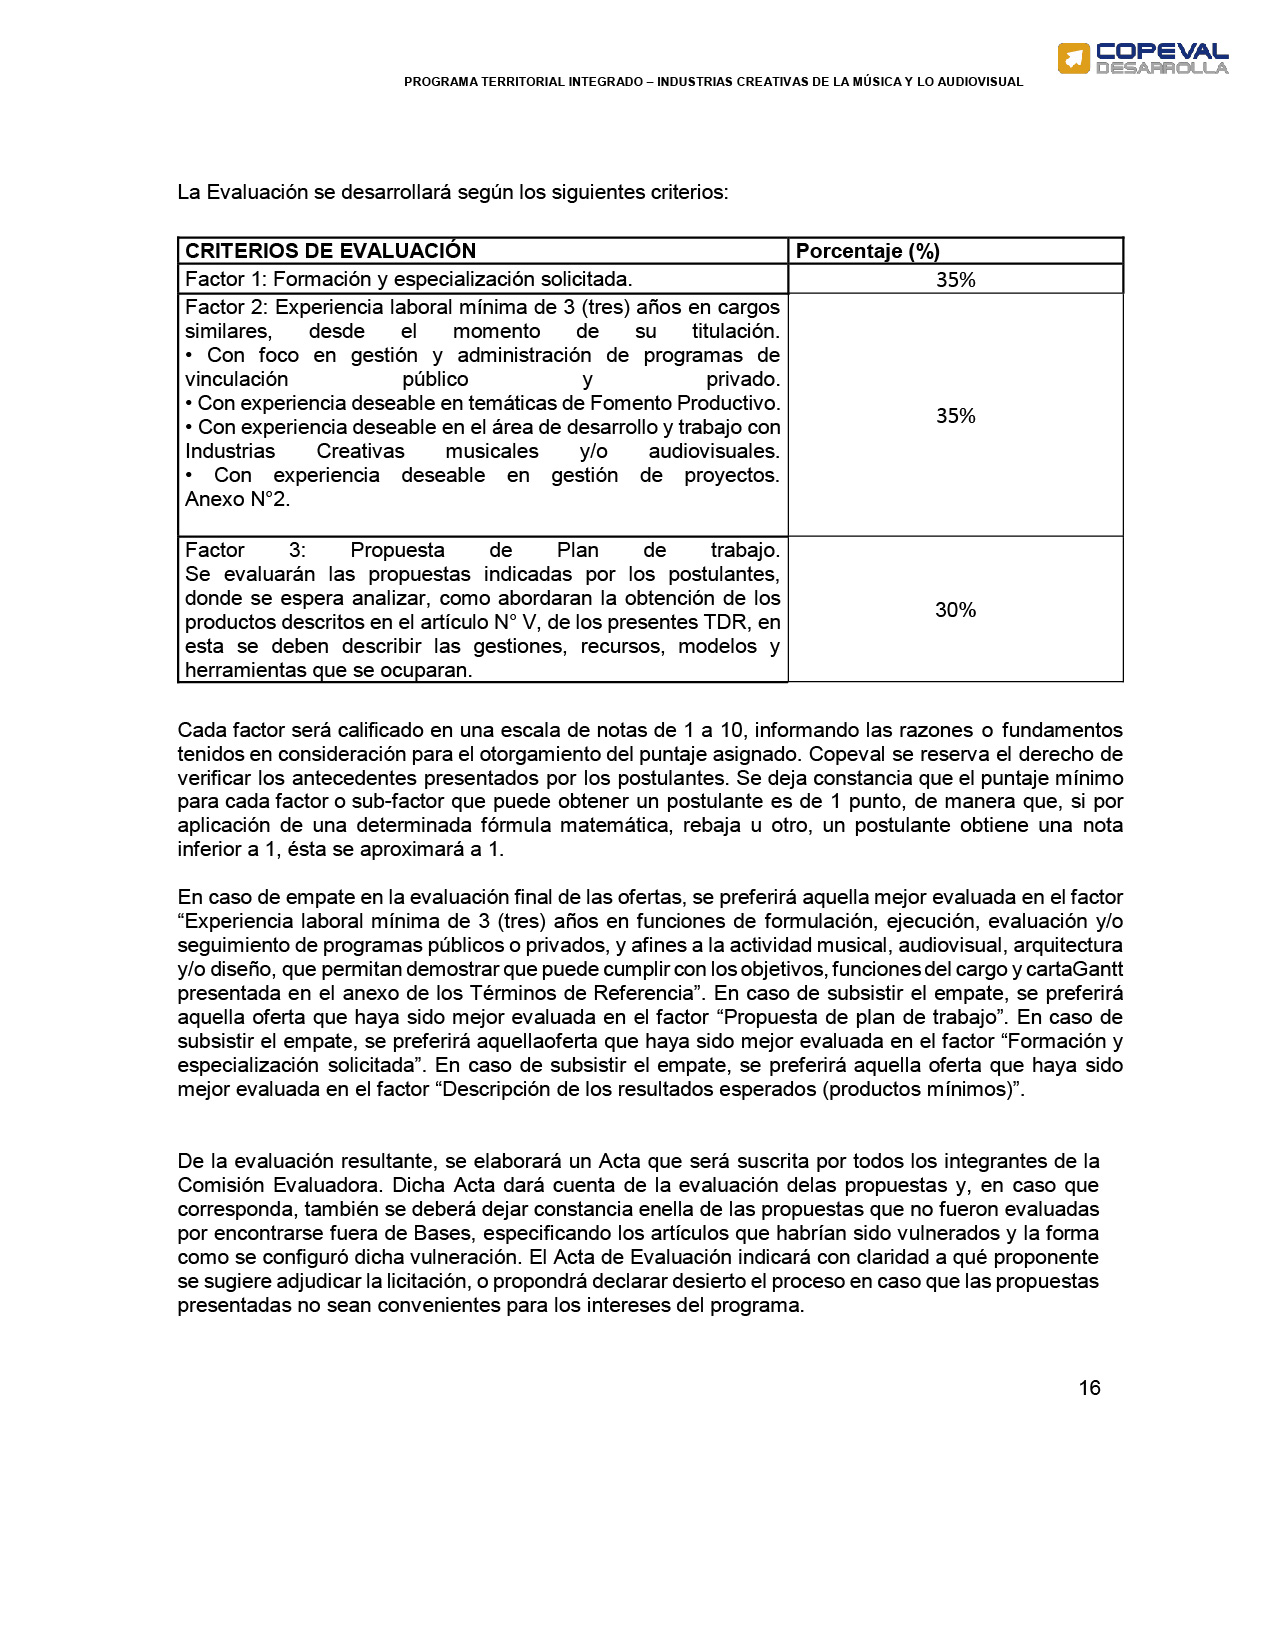 TERMINOS DE REFERENCIA GESTOR PTI CREATIVO ÑUBLE (3)-16